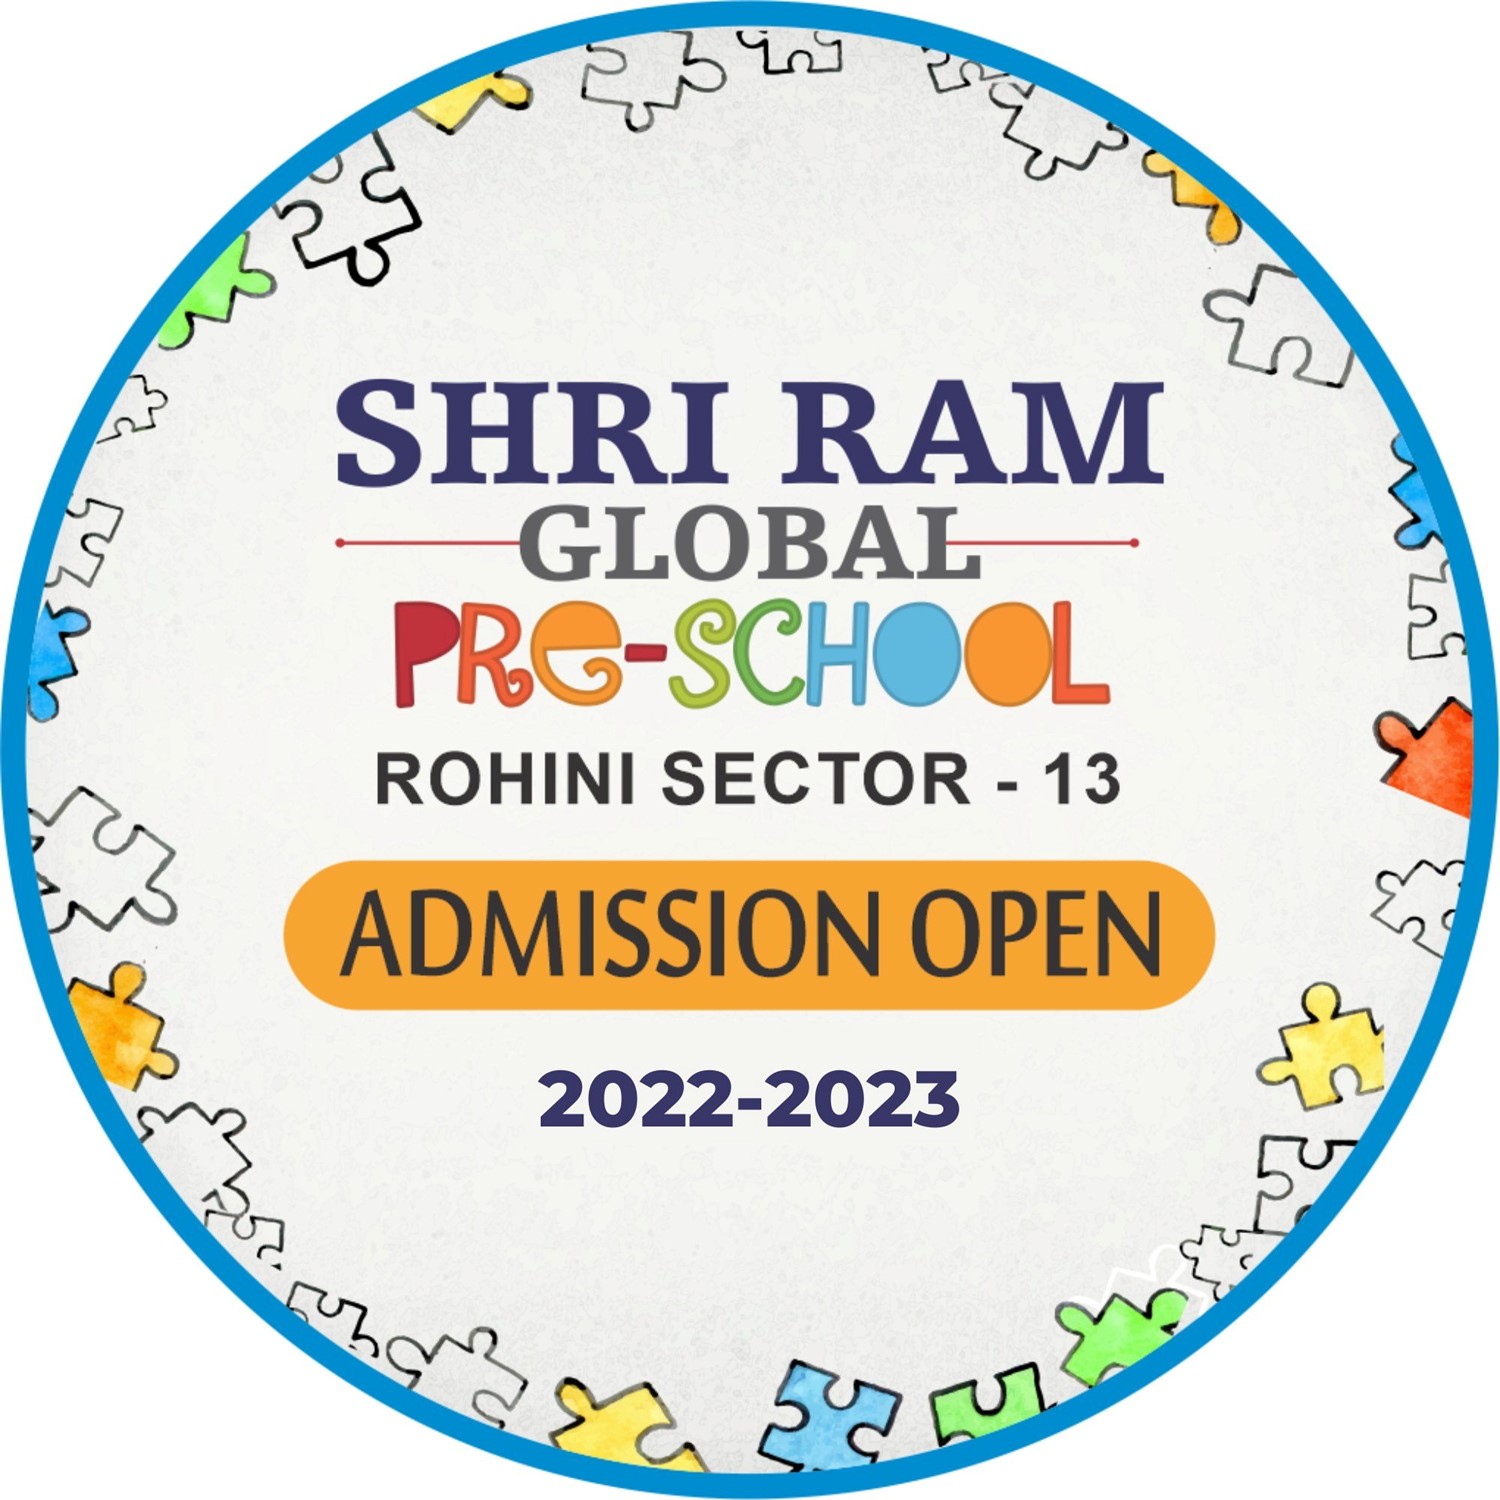 Shri ram global pre school Rohini Sector -13